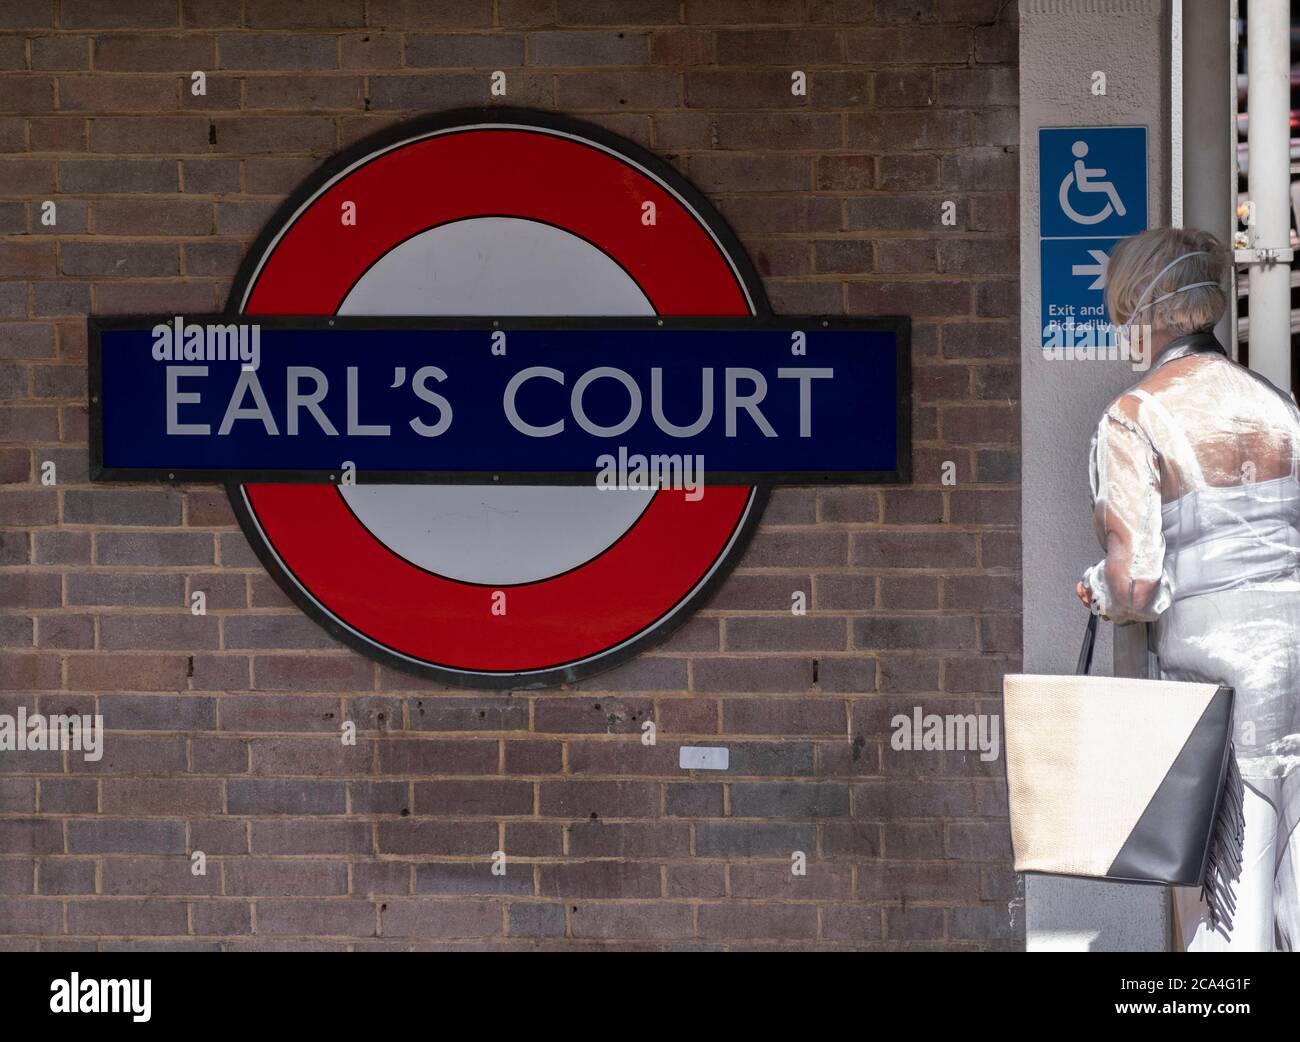 Piccadilly, Londres, Reino Unido. 4 de agosto de 2020. Los viajeros enmascarados esperan un tren subterráneo en la estación Earls Court, manteniendo las medidas de protección contra la pandemia de Coronavurus mientras viajan en el transporte de Londres. Crédito: Malcolm Park/Alamy Live News Foto de stock